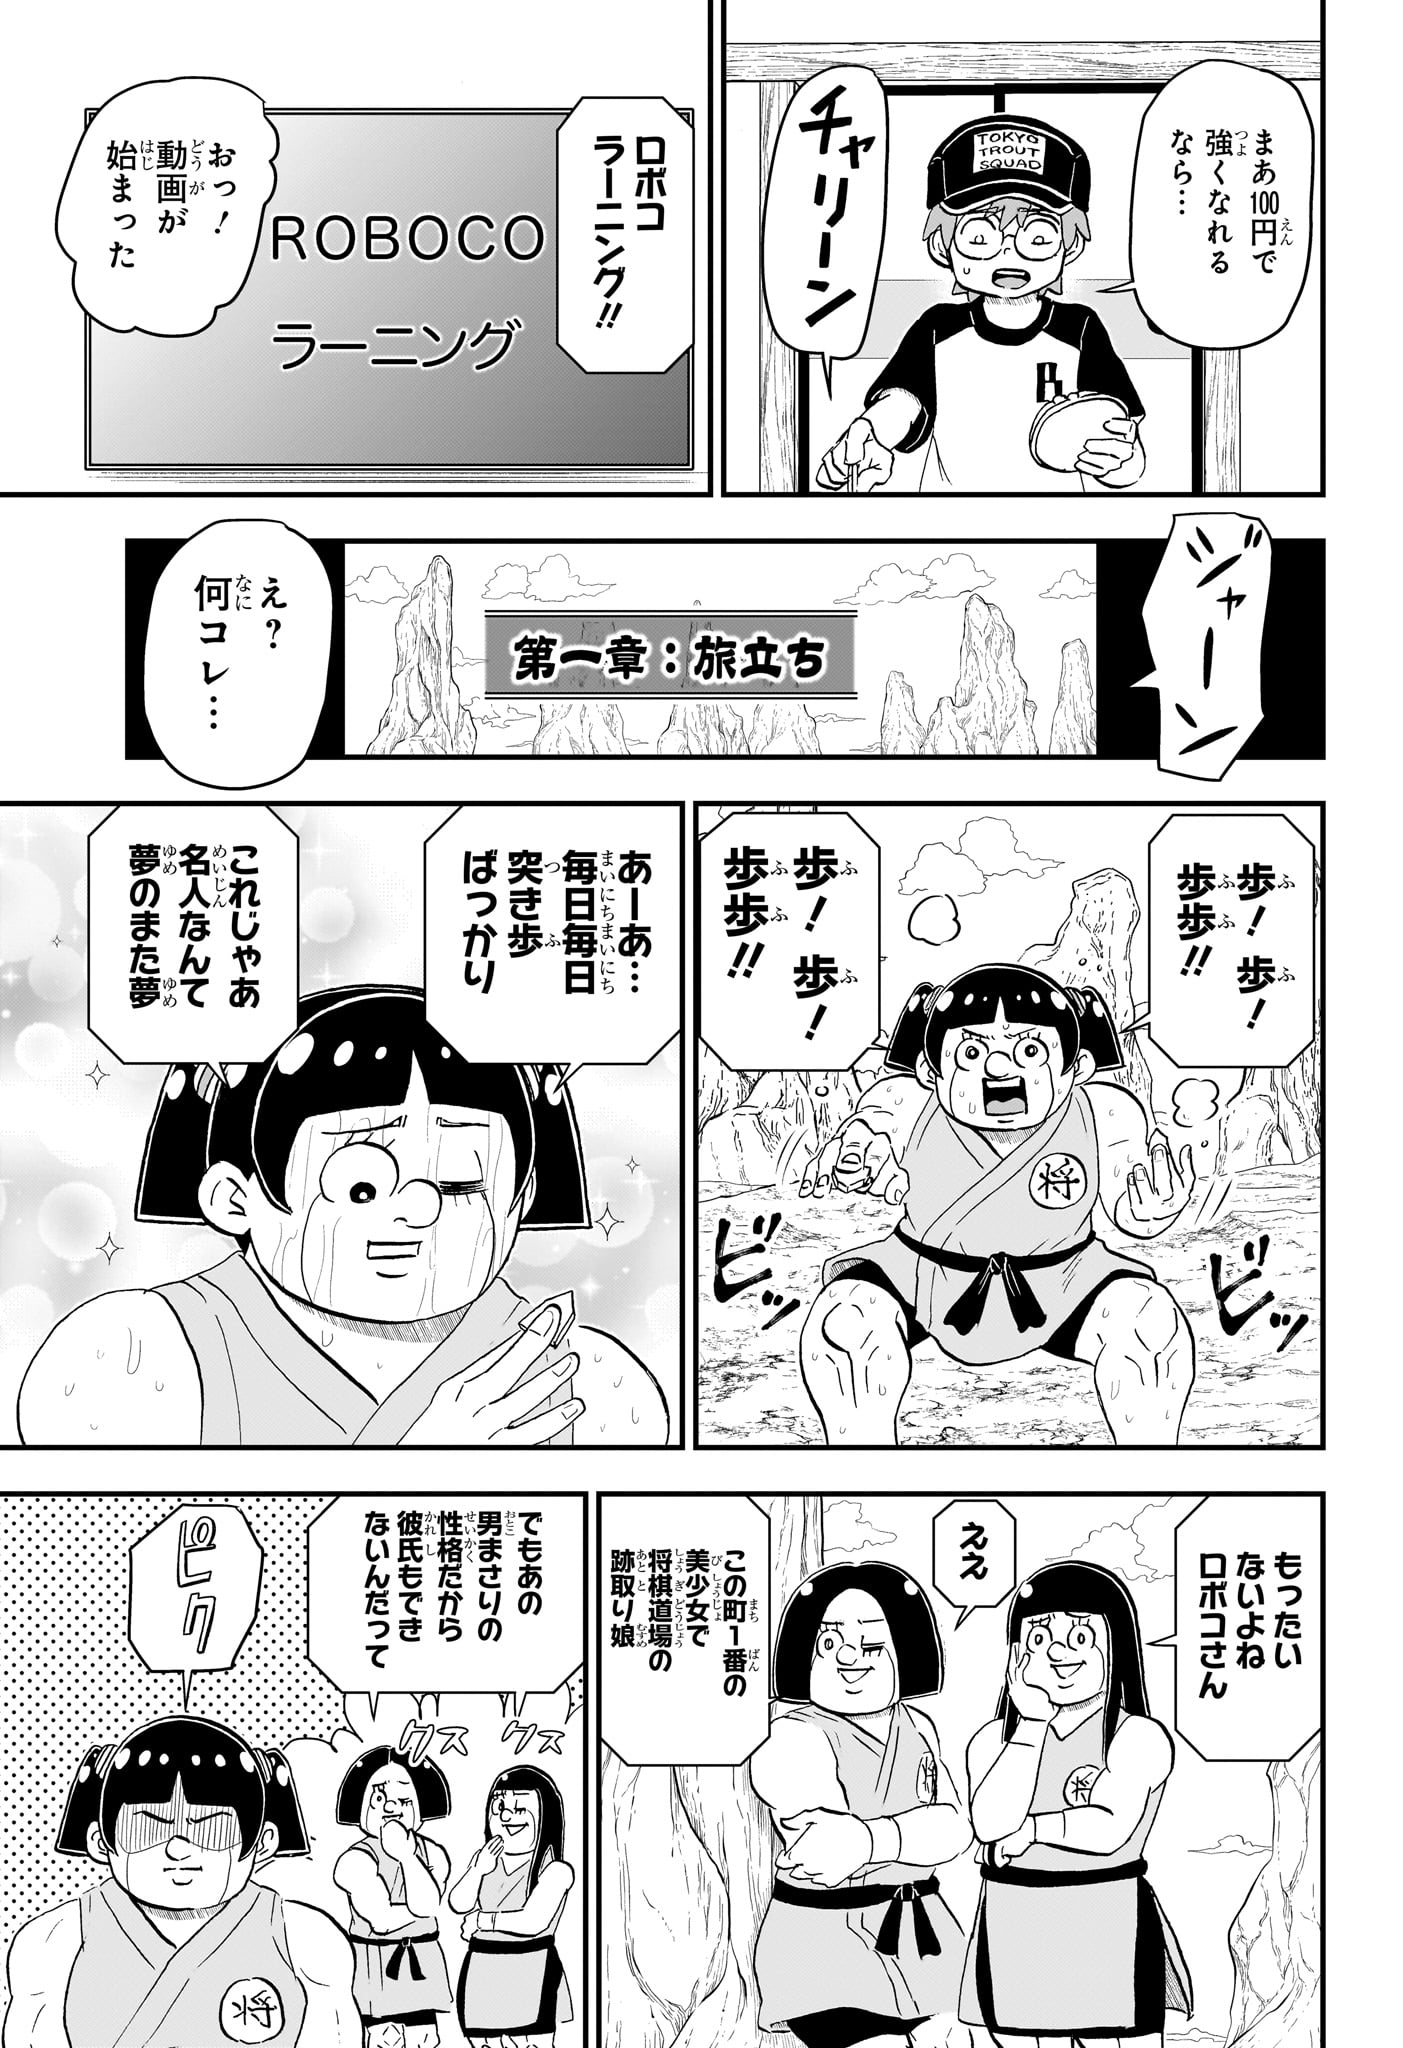 Boku to Roboko - Chapter 191 - Page 11